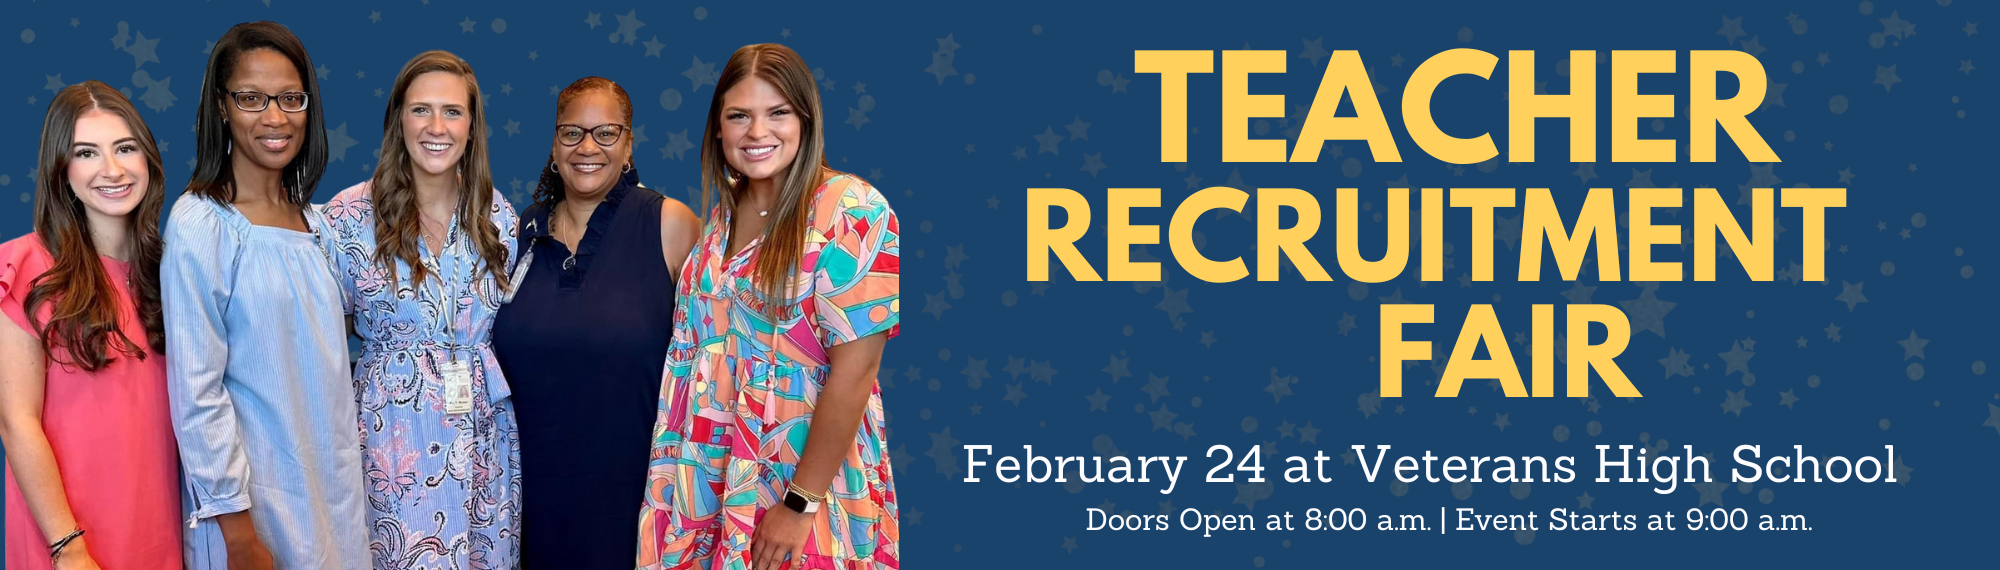 Teacher Recruitment Fair February 24 at Veterans High School. Doors Open at 8:00am, Event Starts at 9:00am.